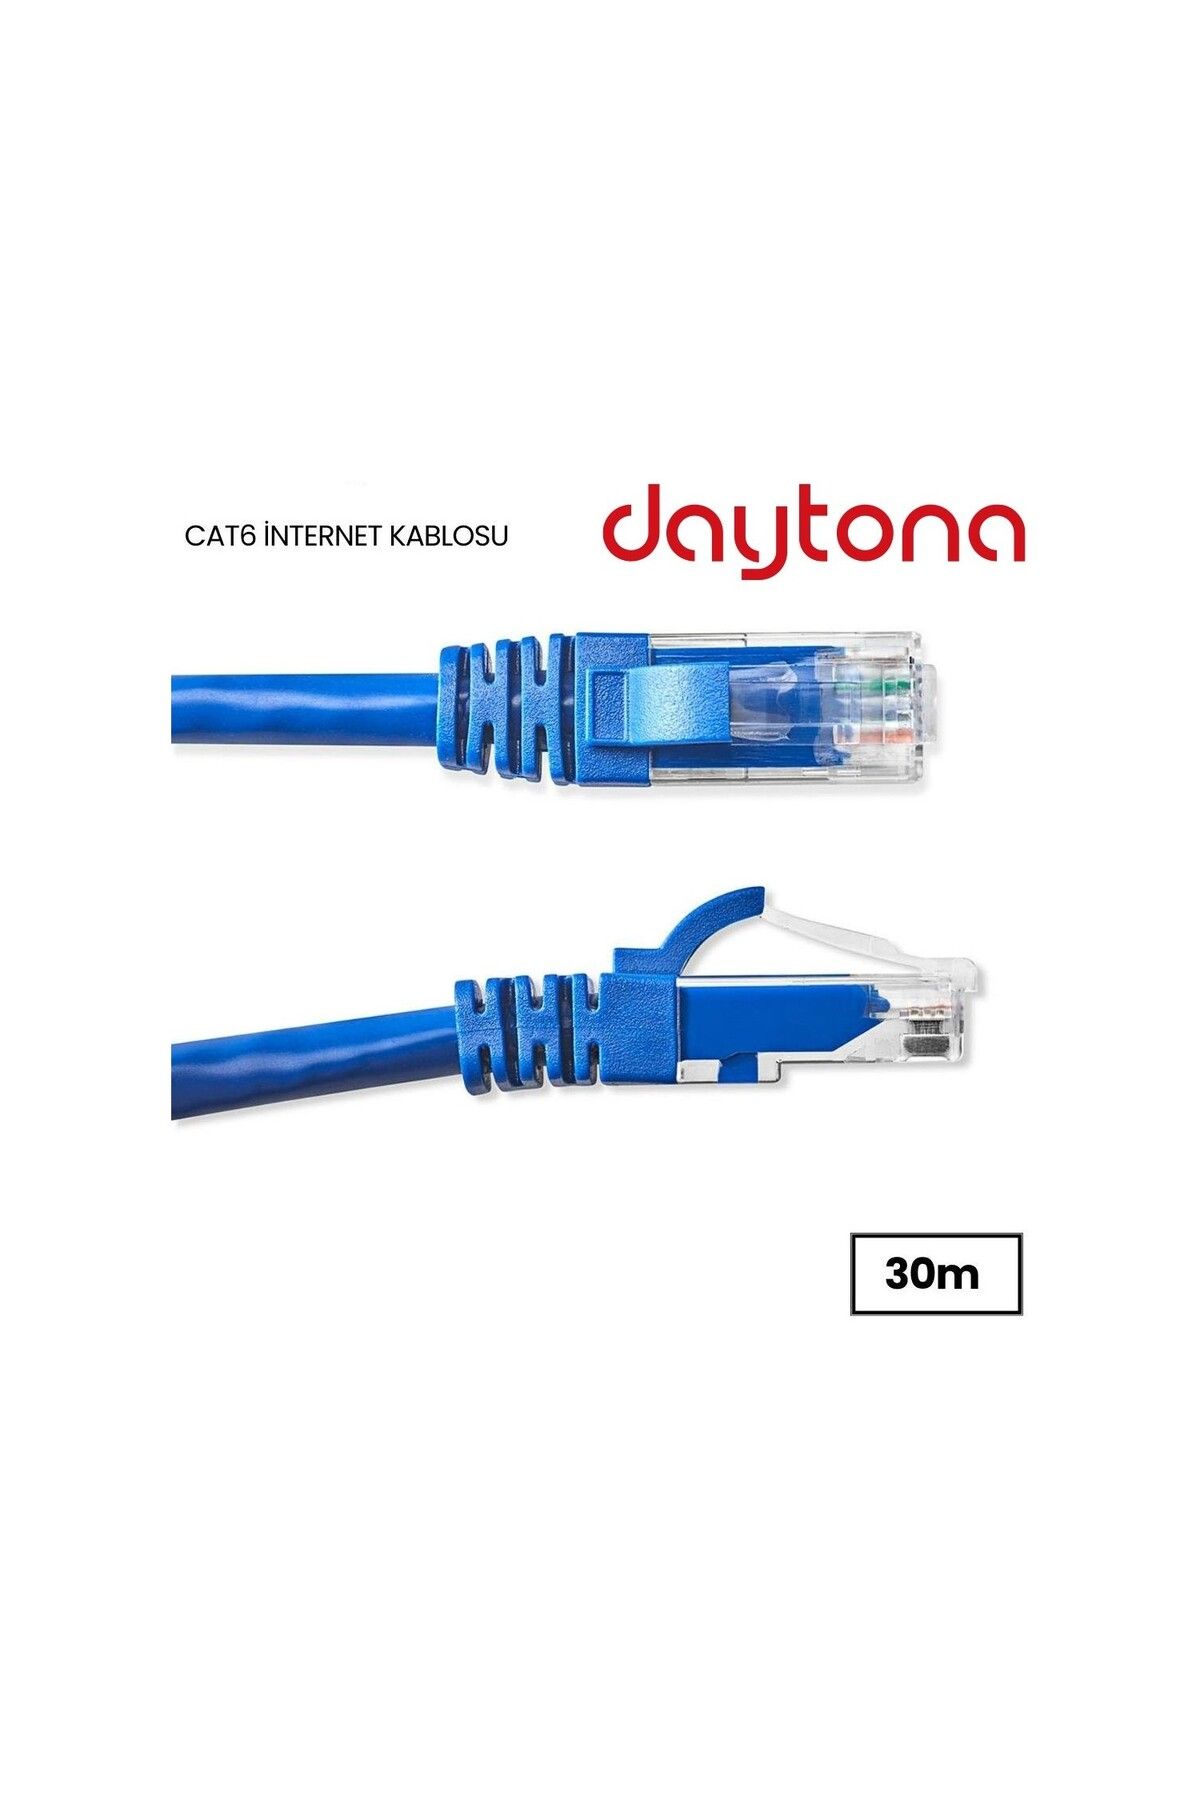 Daytona A4613 Cat6 Gigabit Internet Ethernet 10gbps Rj45 Lan Kablosu (30 METRE)